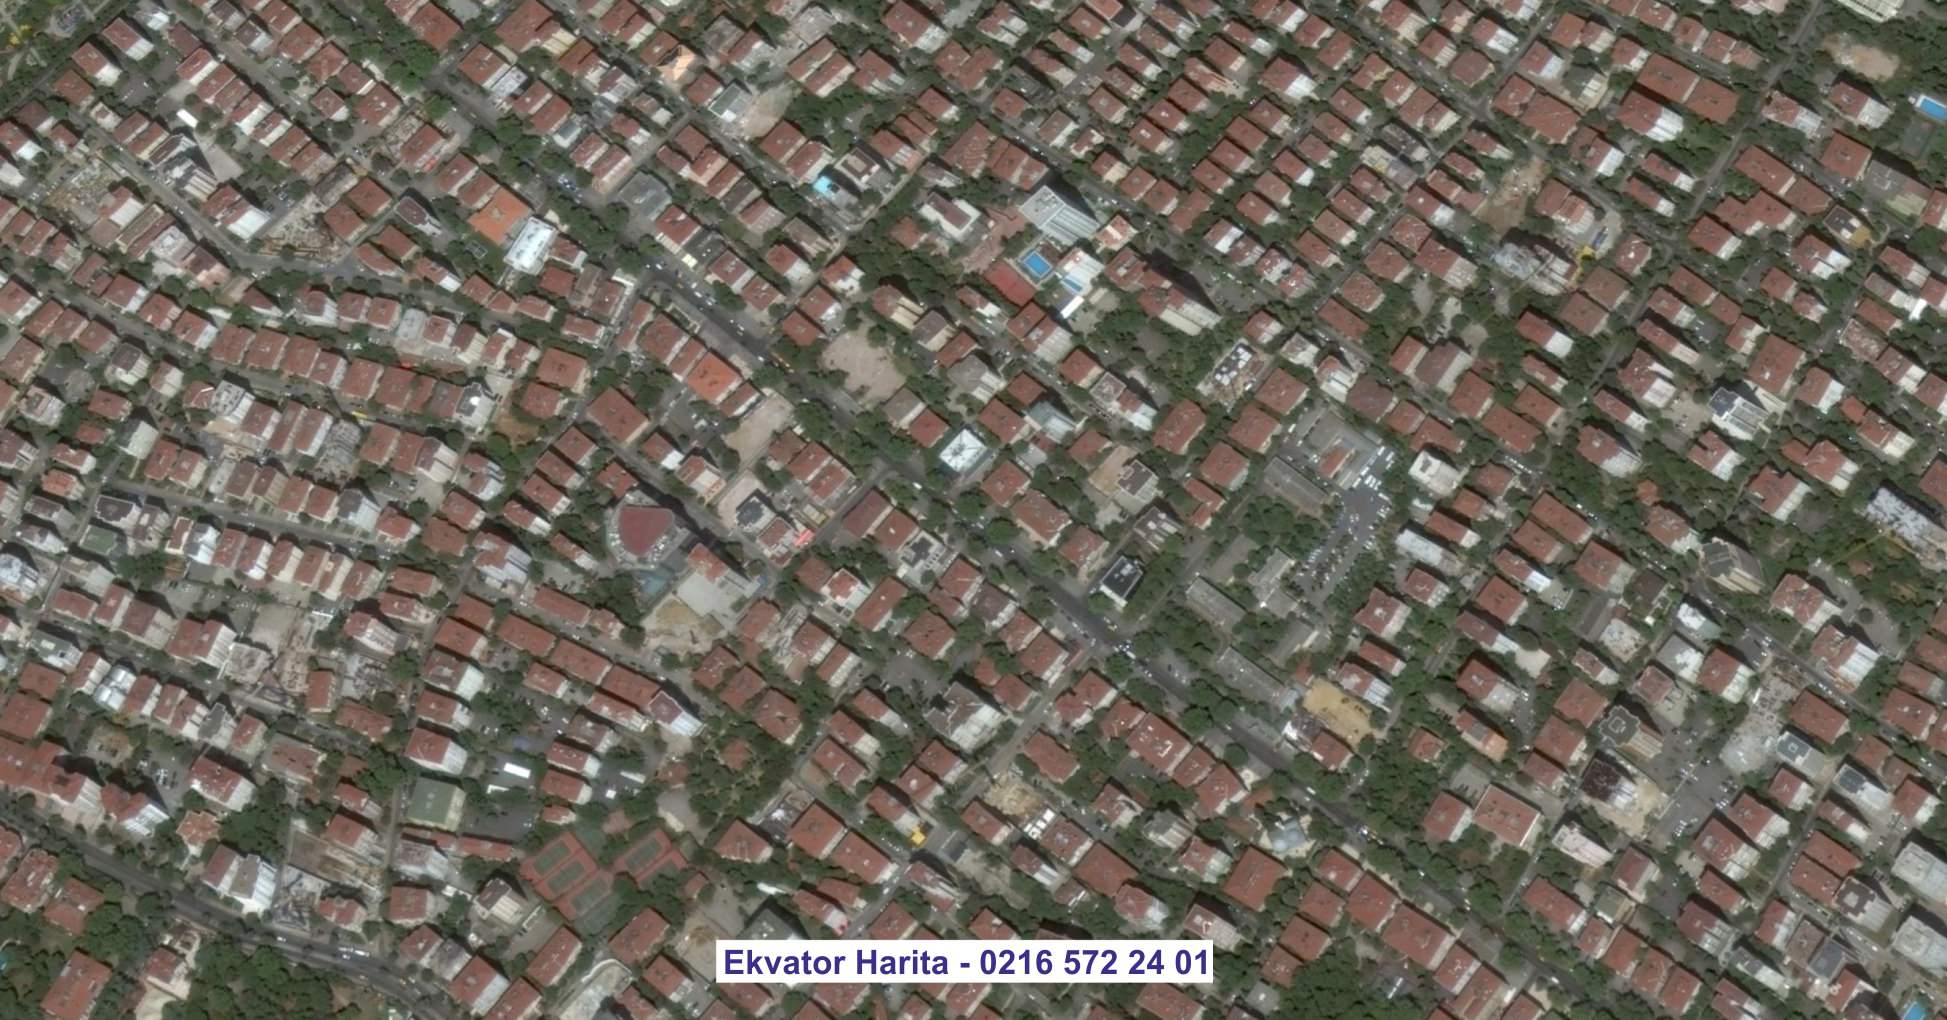 Konak Uydu Görüntüsü Örnek Fotoğrafı